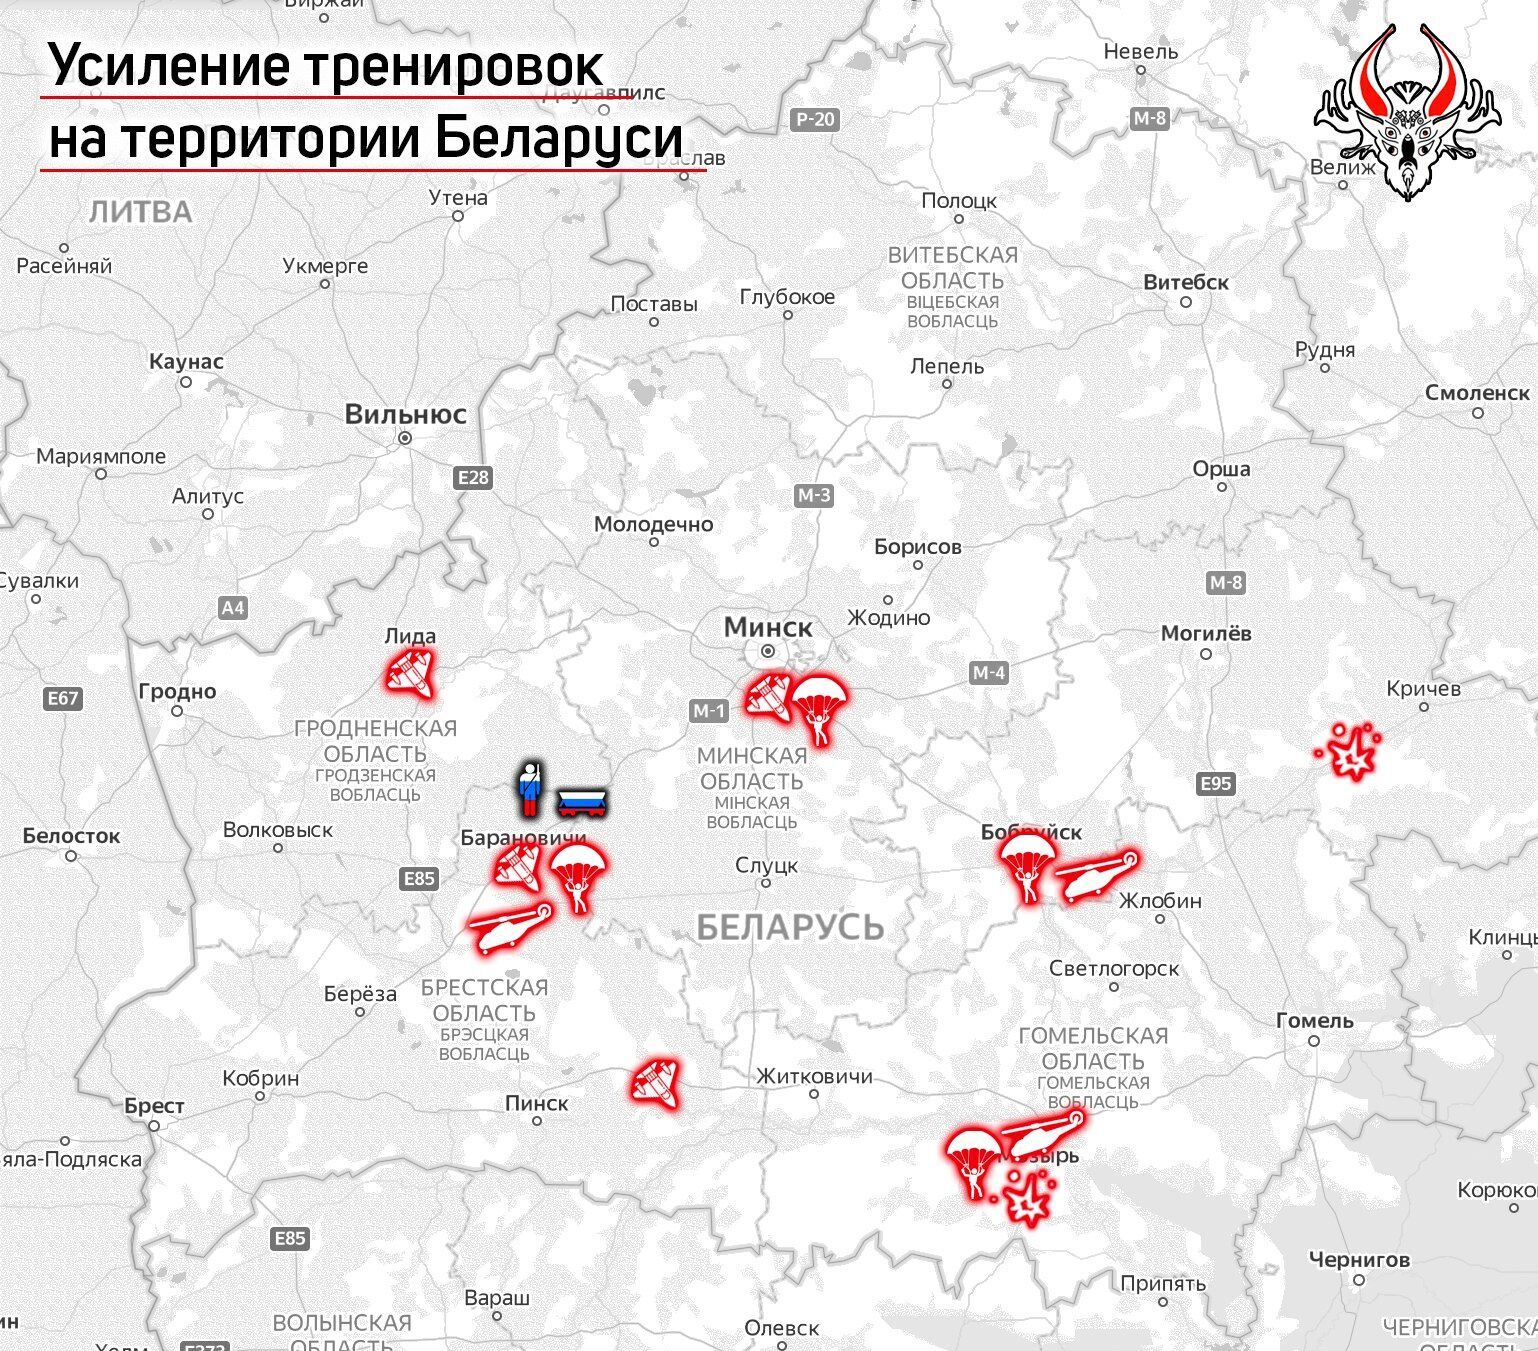 В Беларуси проходят активные авиатренировки сразу на пяти аэродромах.